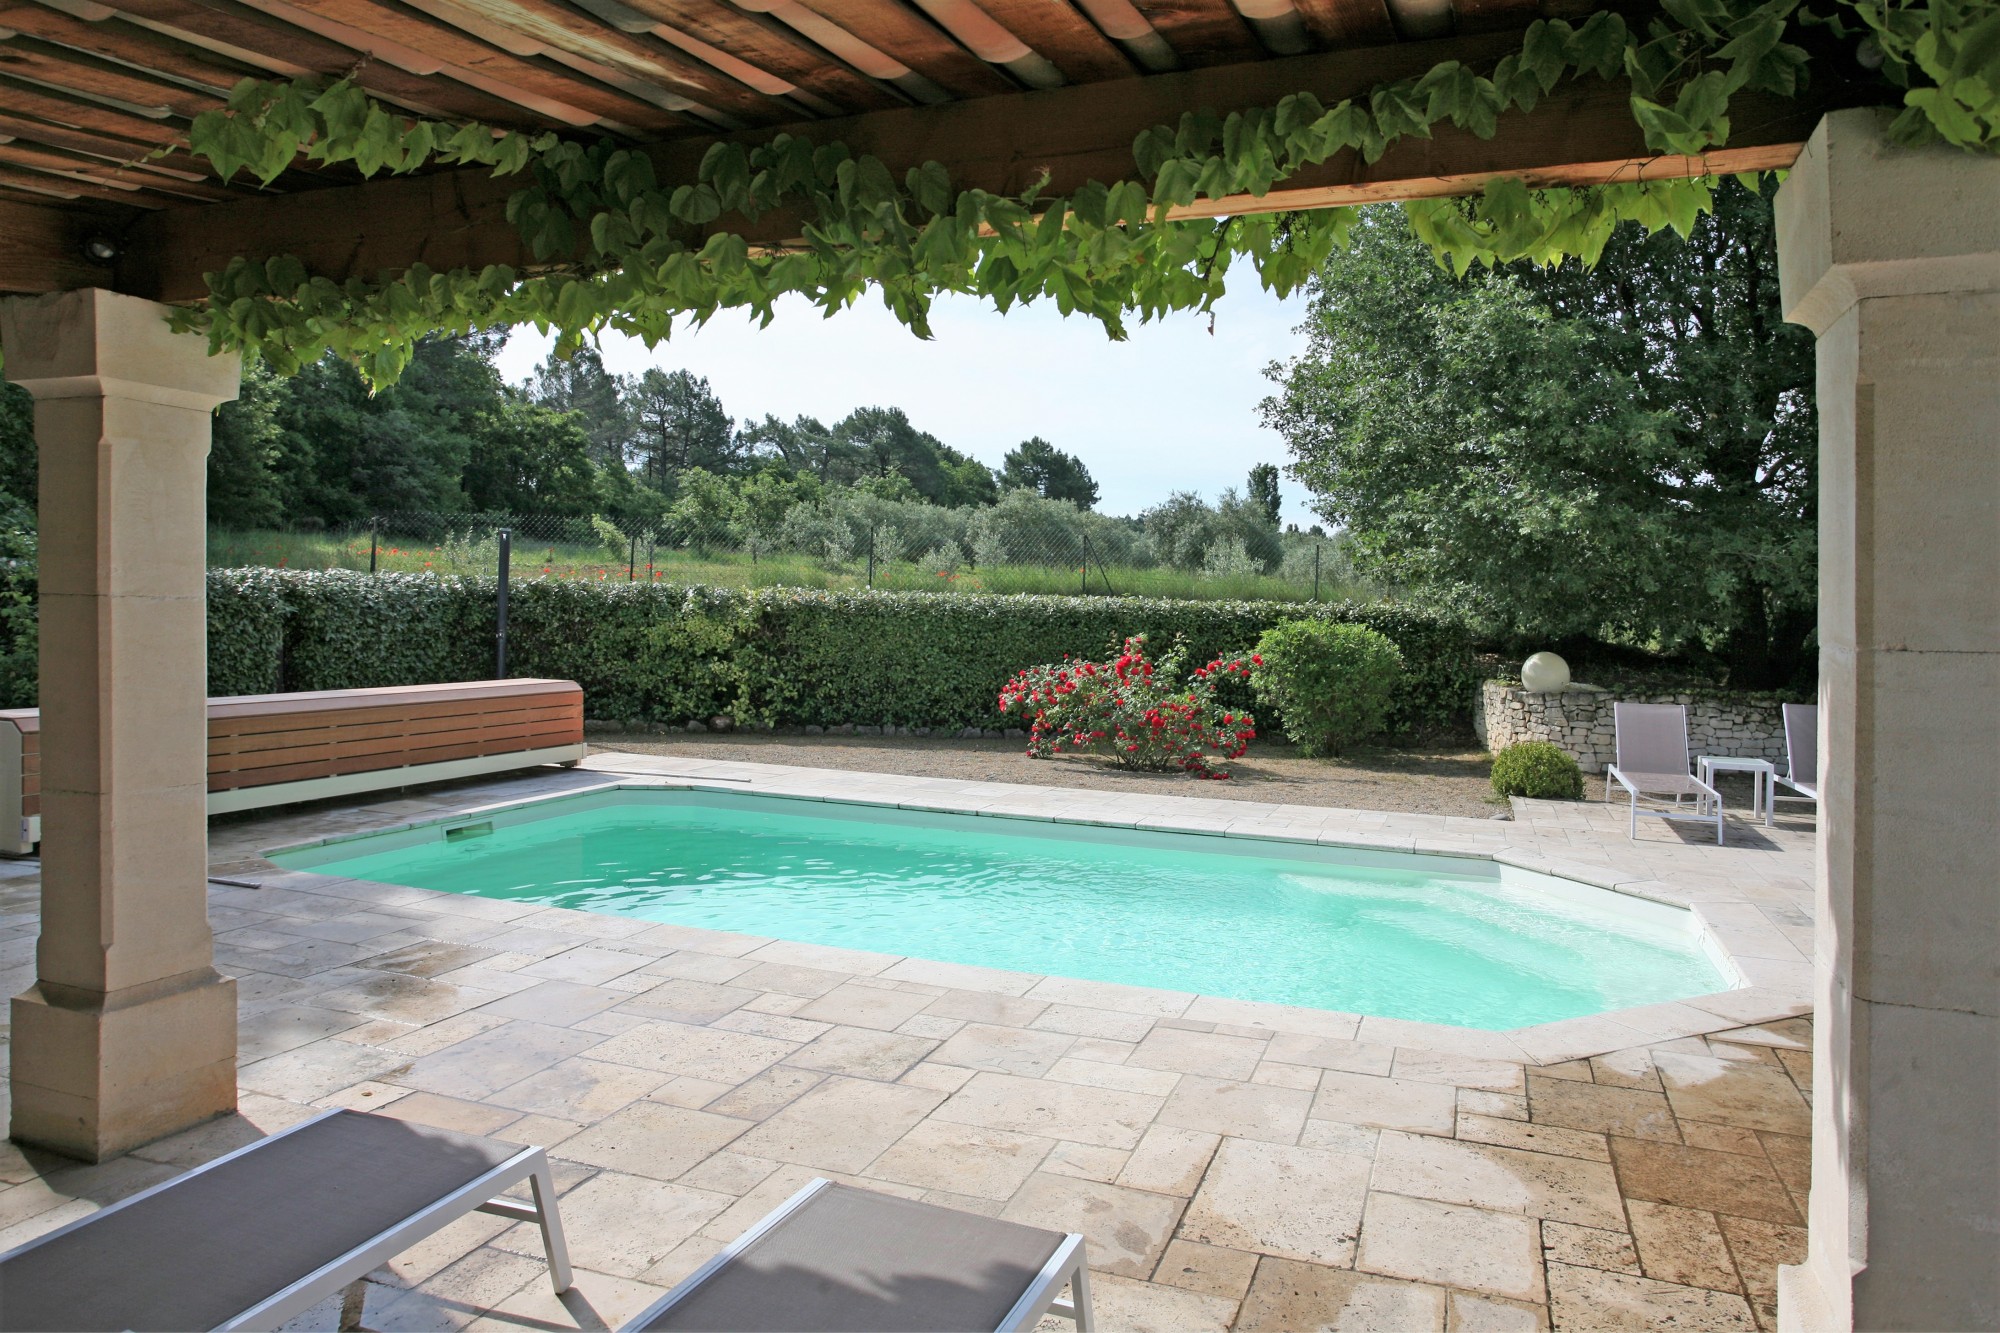 Location à Roussillon, au calme, ravissante maison récente avec piscine 